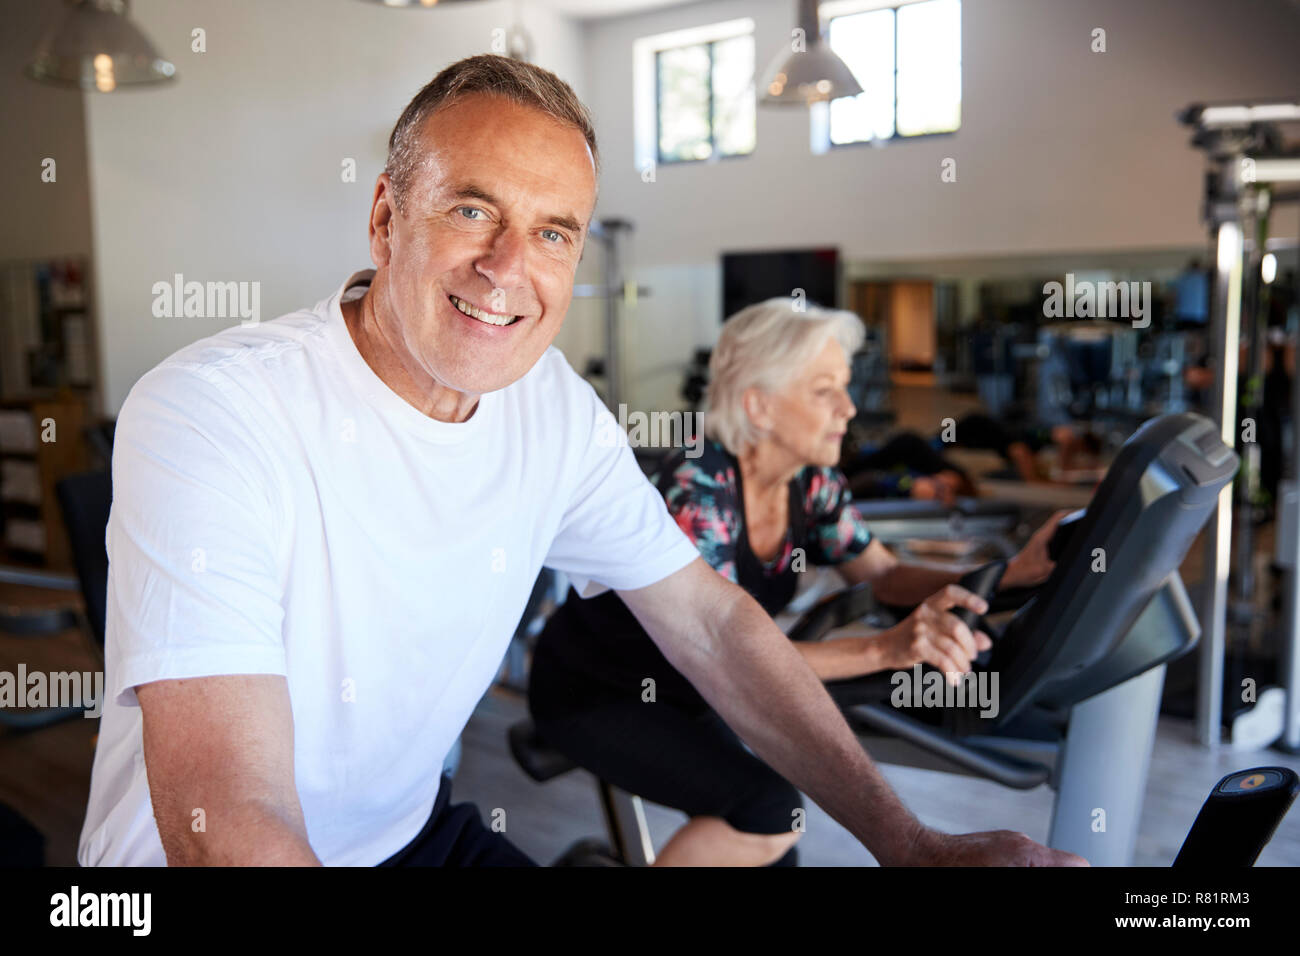 Portrait der aktiven älteren Menschen ruhen Nach dem Training auf dem Radfahren Maschinen in der Turnhalle Stockfoto